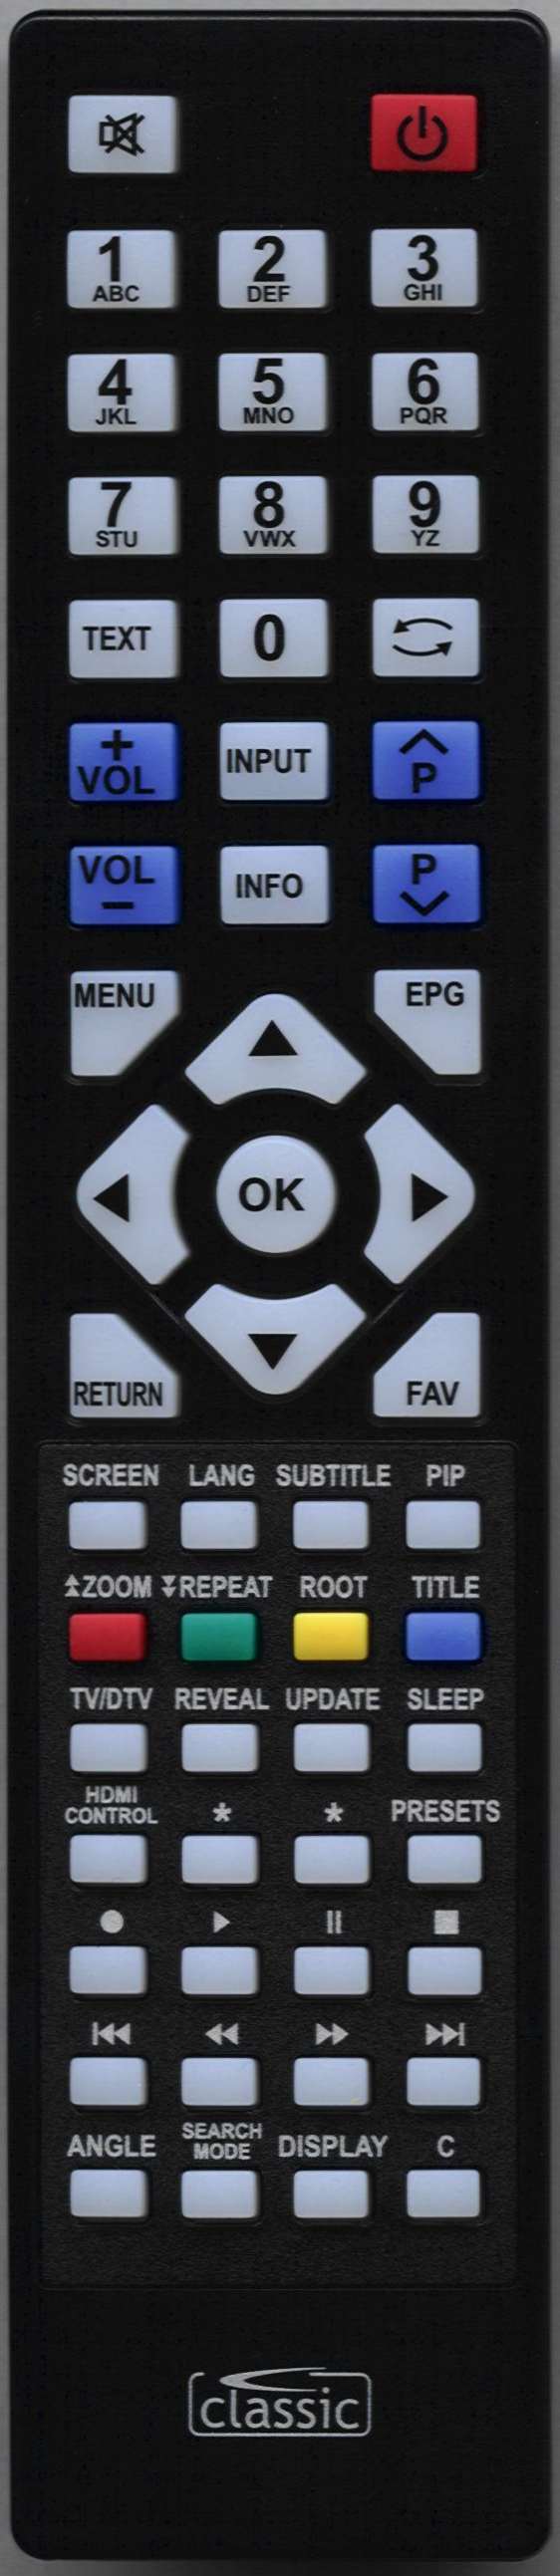 TECHWOOD LED19940DVDHD Remote Control Alternative